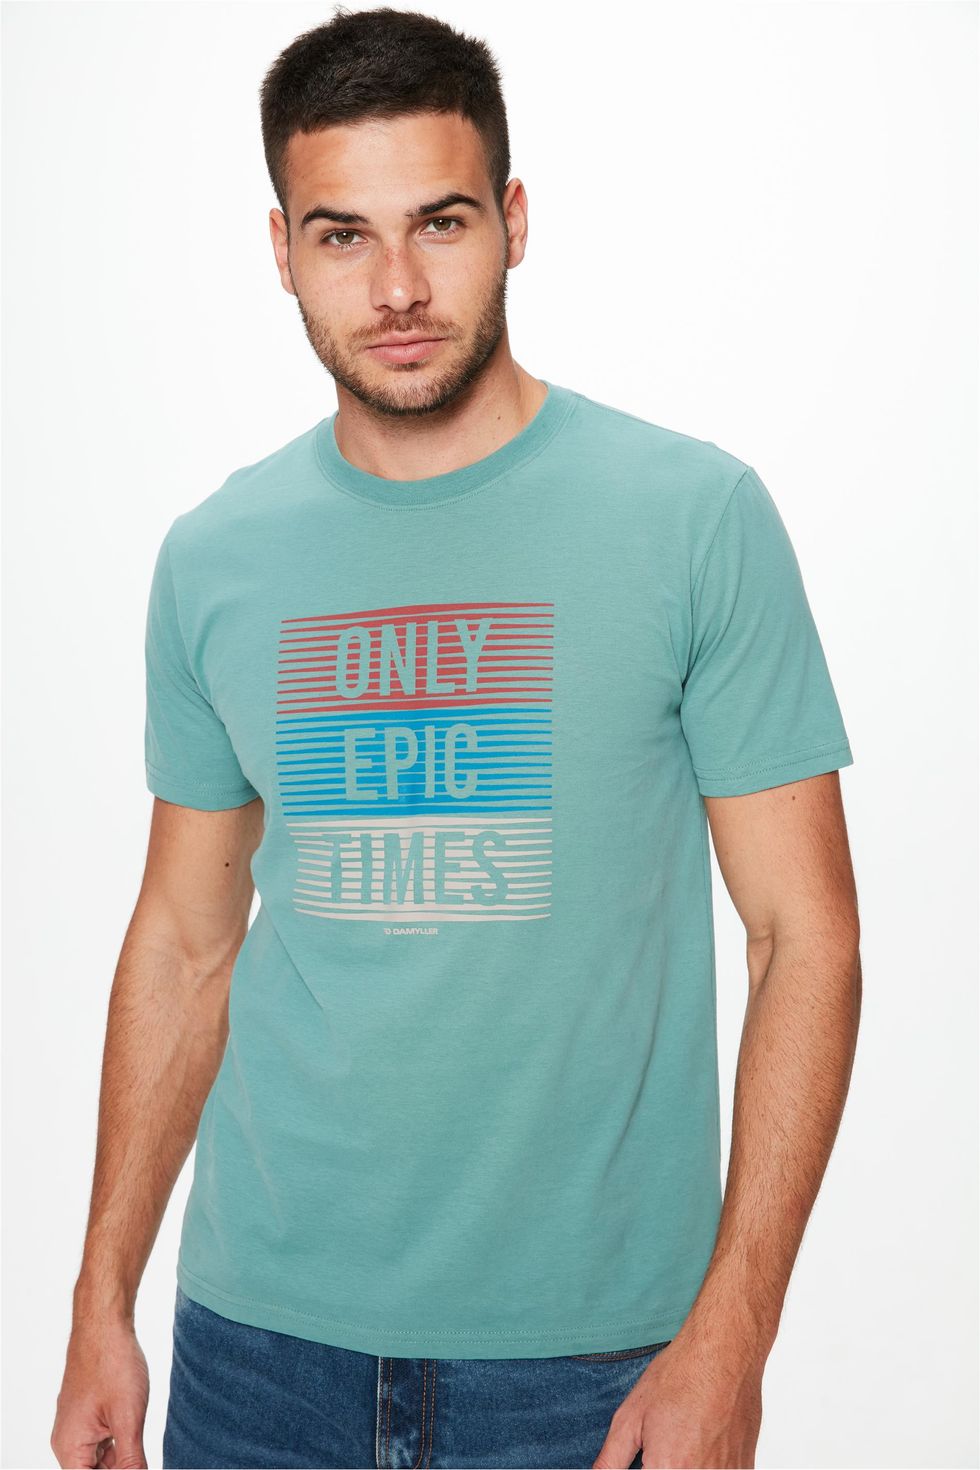 Camiseta-com-Estampa-Only-Epic-Times-Frente--